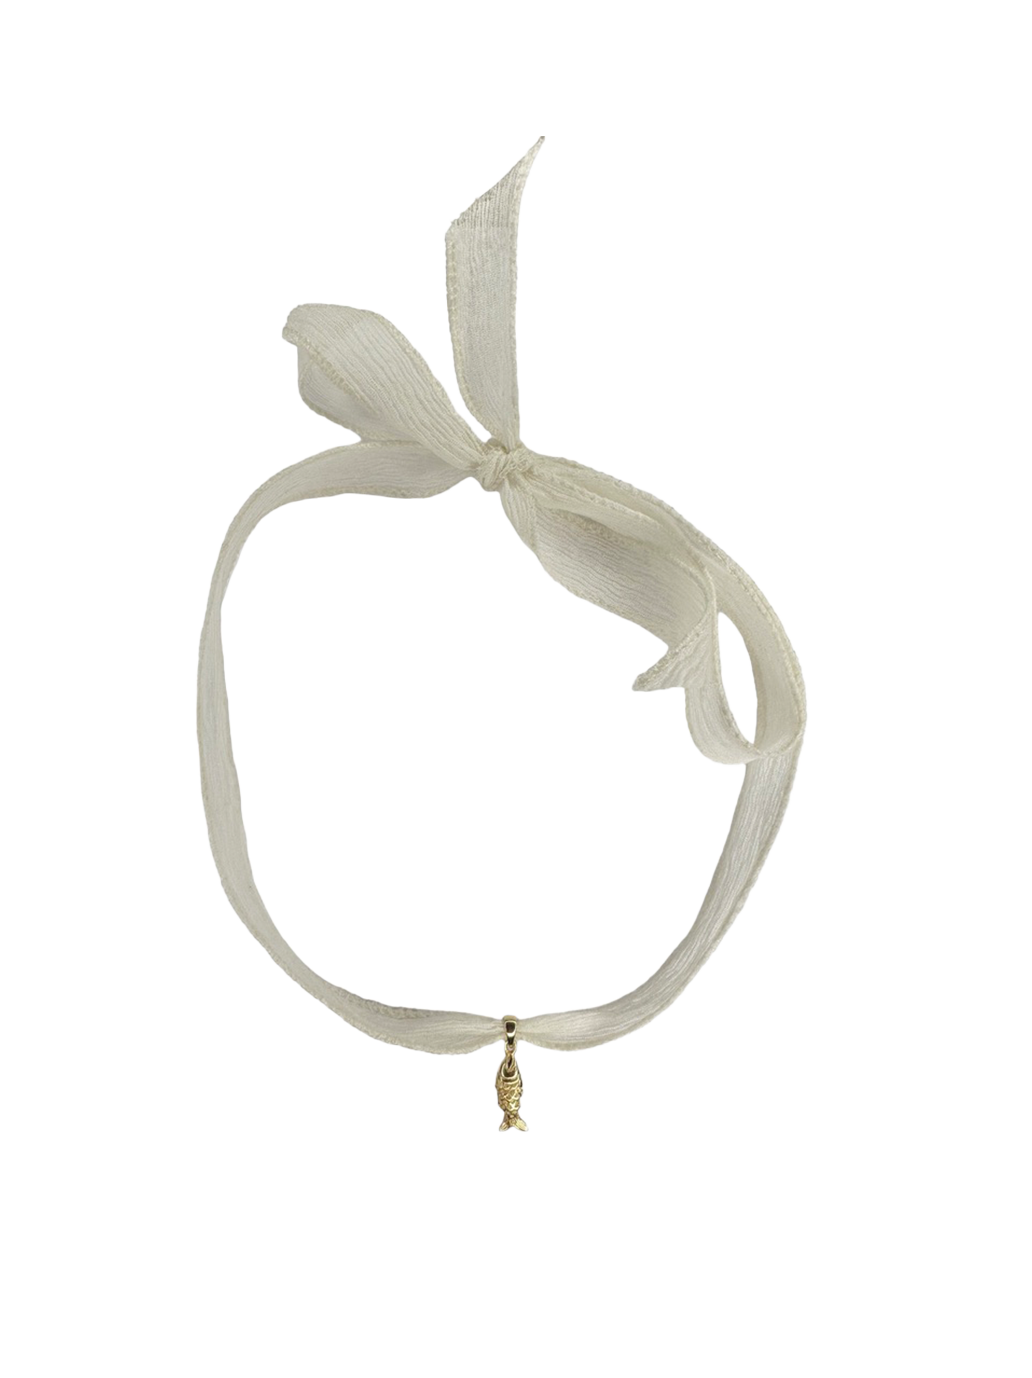 Halskette mit Poisson-Schnur